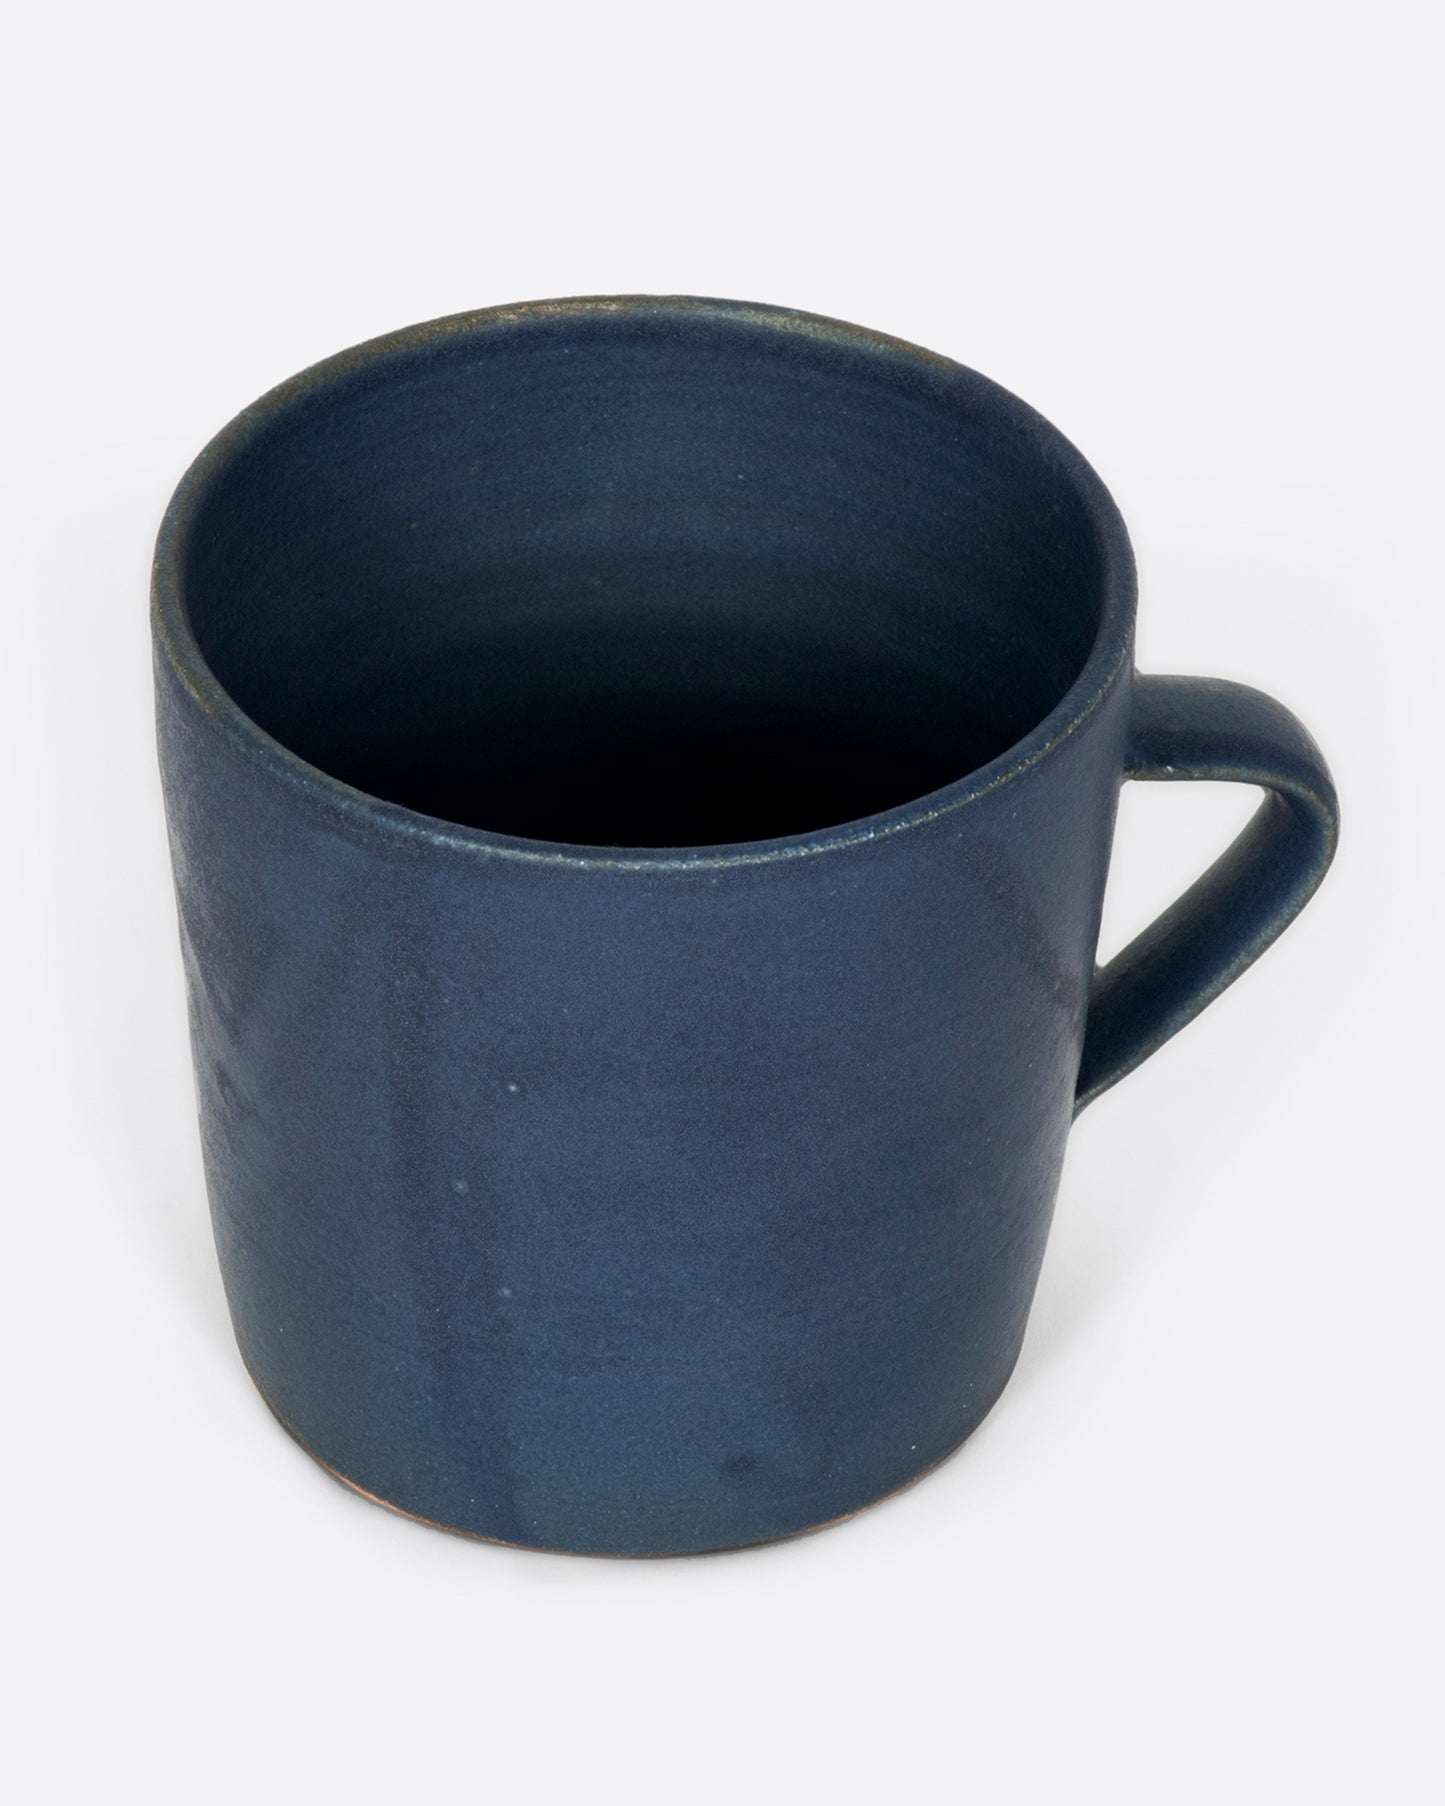 A hand thrown ceramic mug with a matte, deep blue glaze.